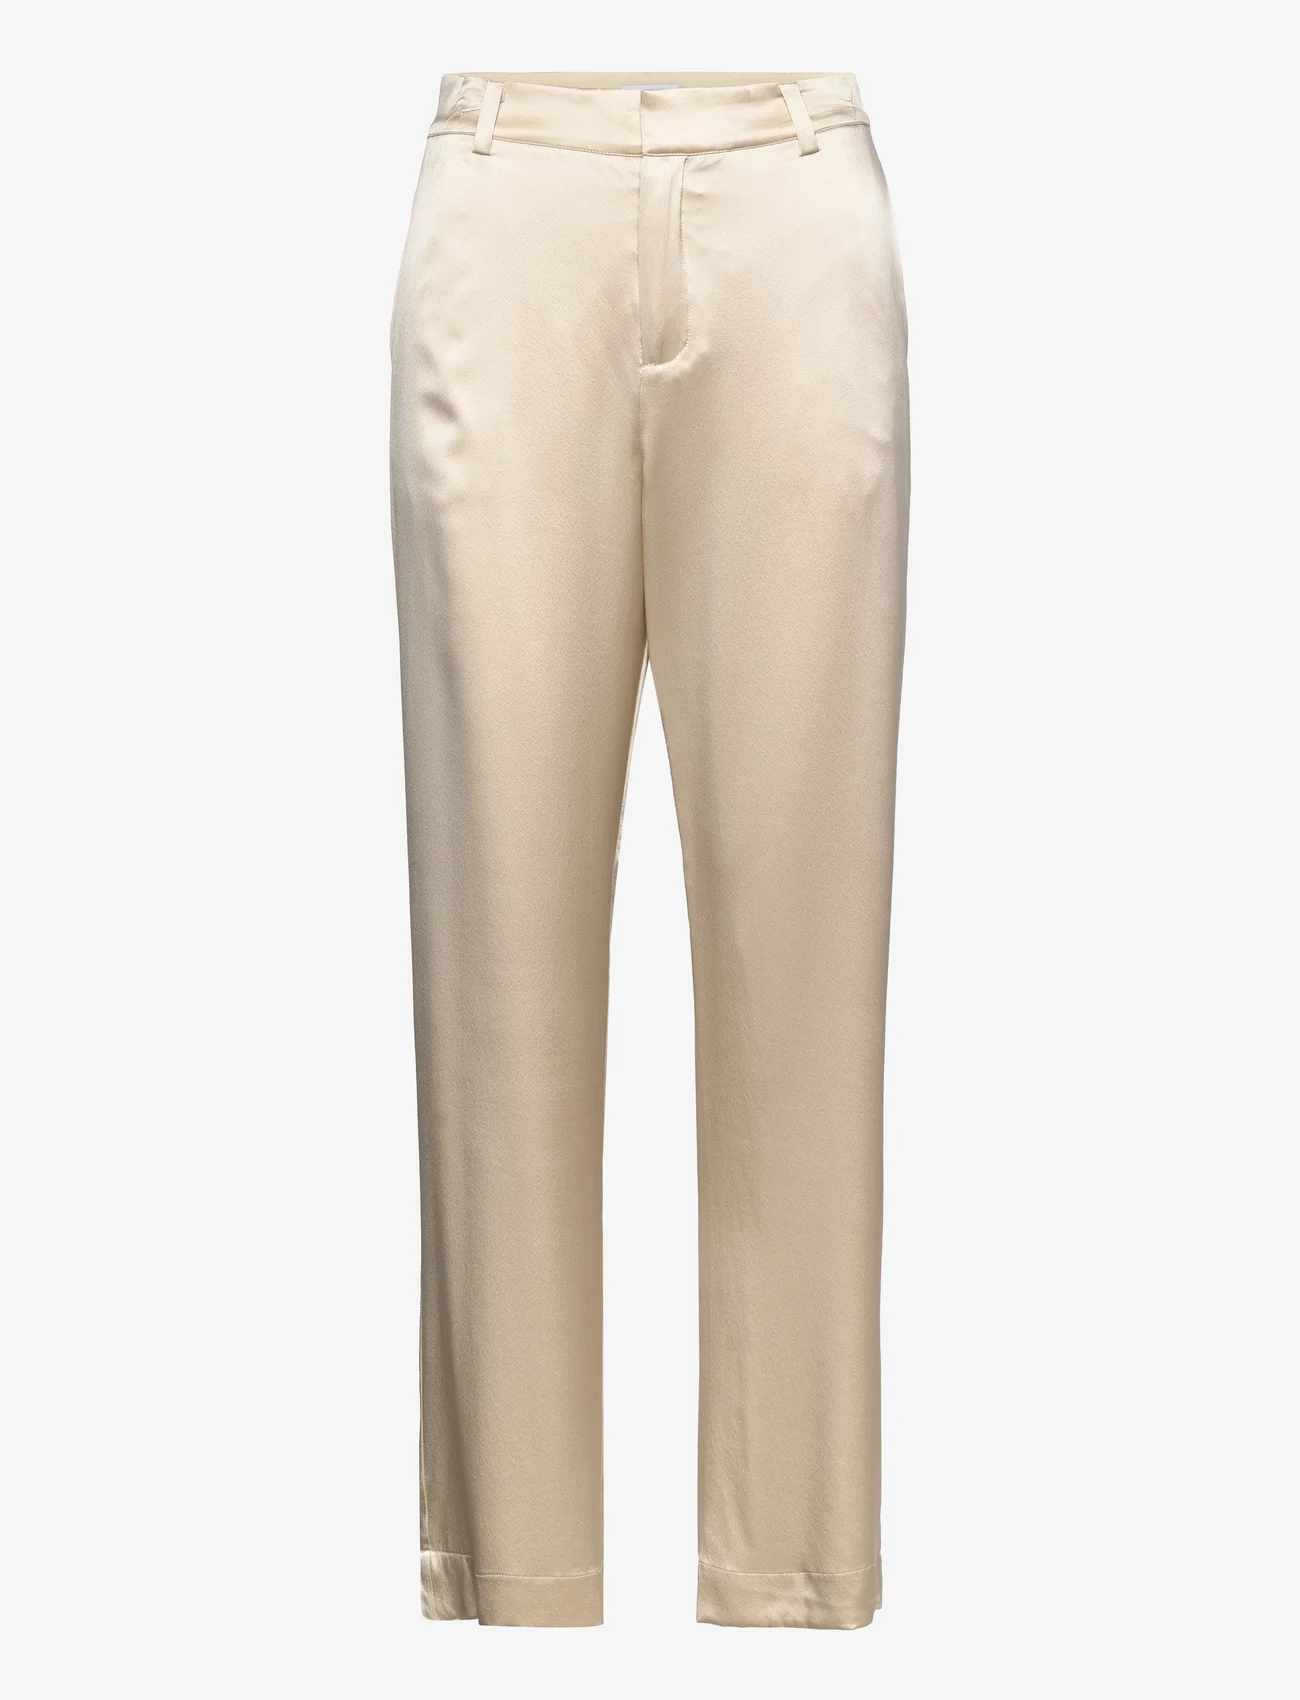 Ahlvar Gallery - Ava trousers - tiesaus kirpimo kelnės - cream - 0